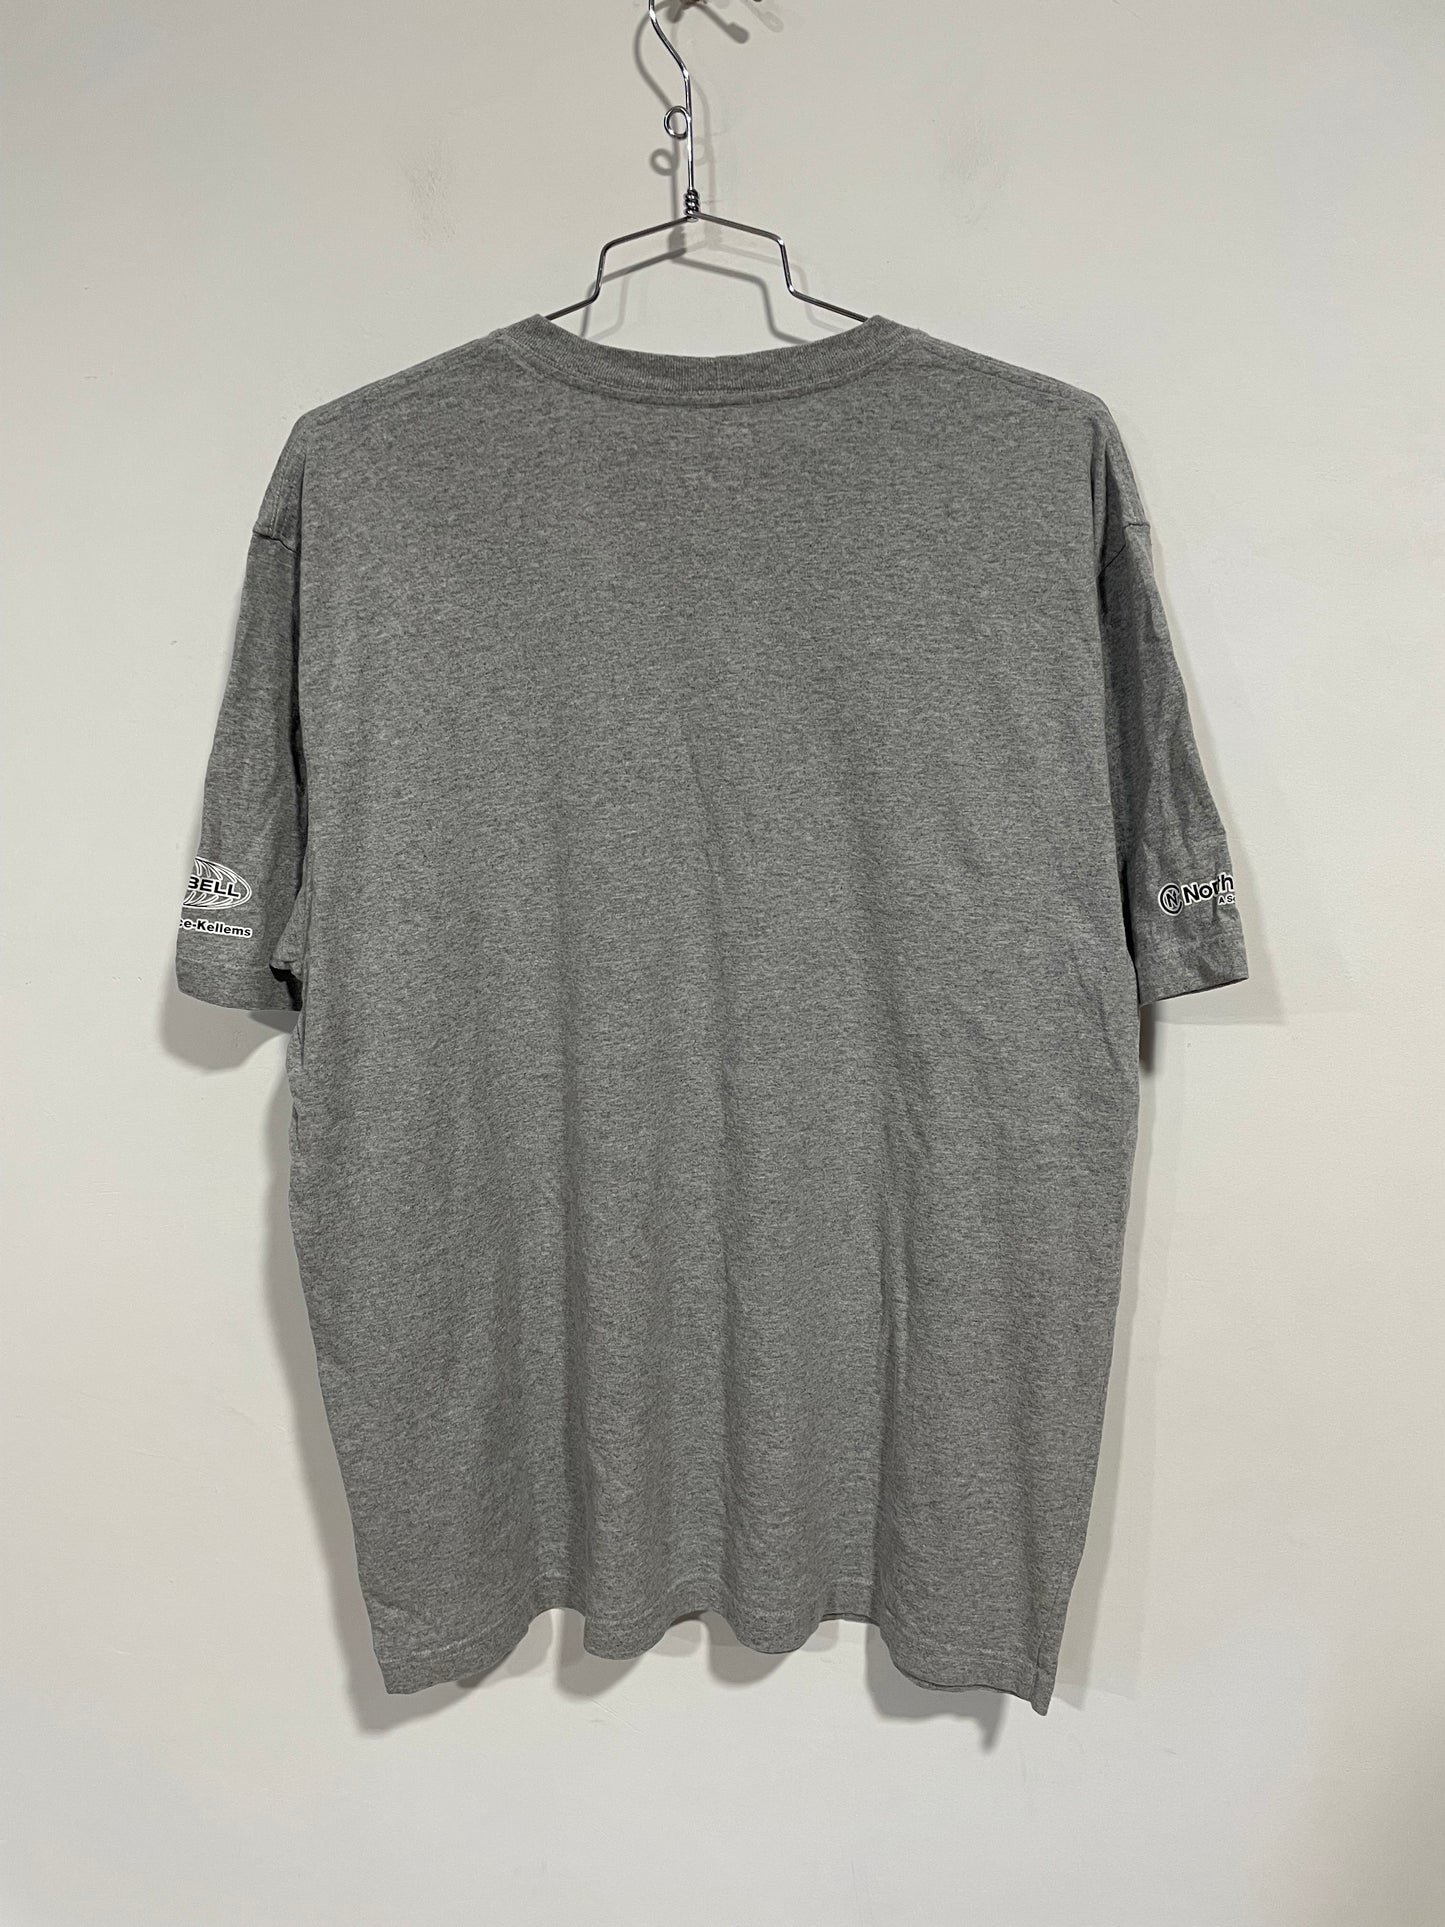 T shirt Carhartt workwear USA (C931)